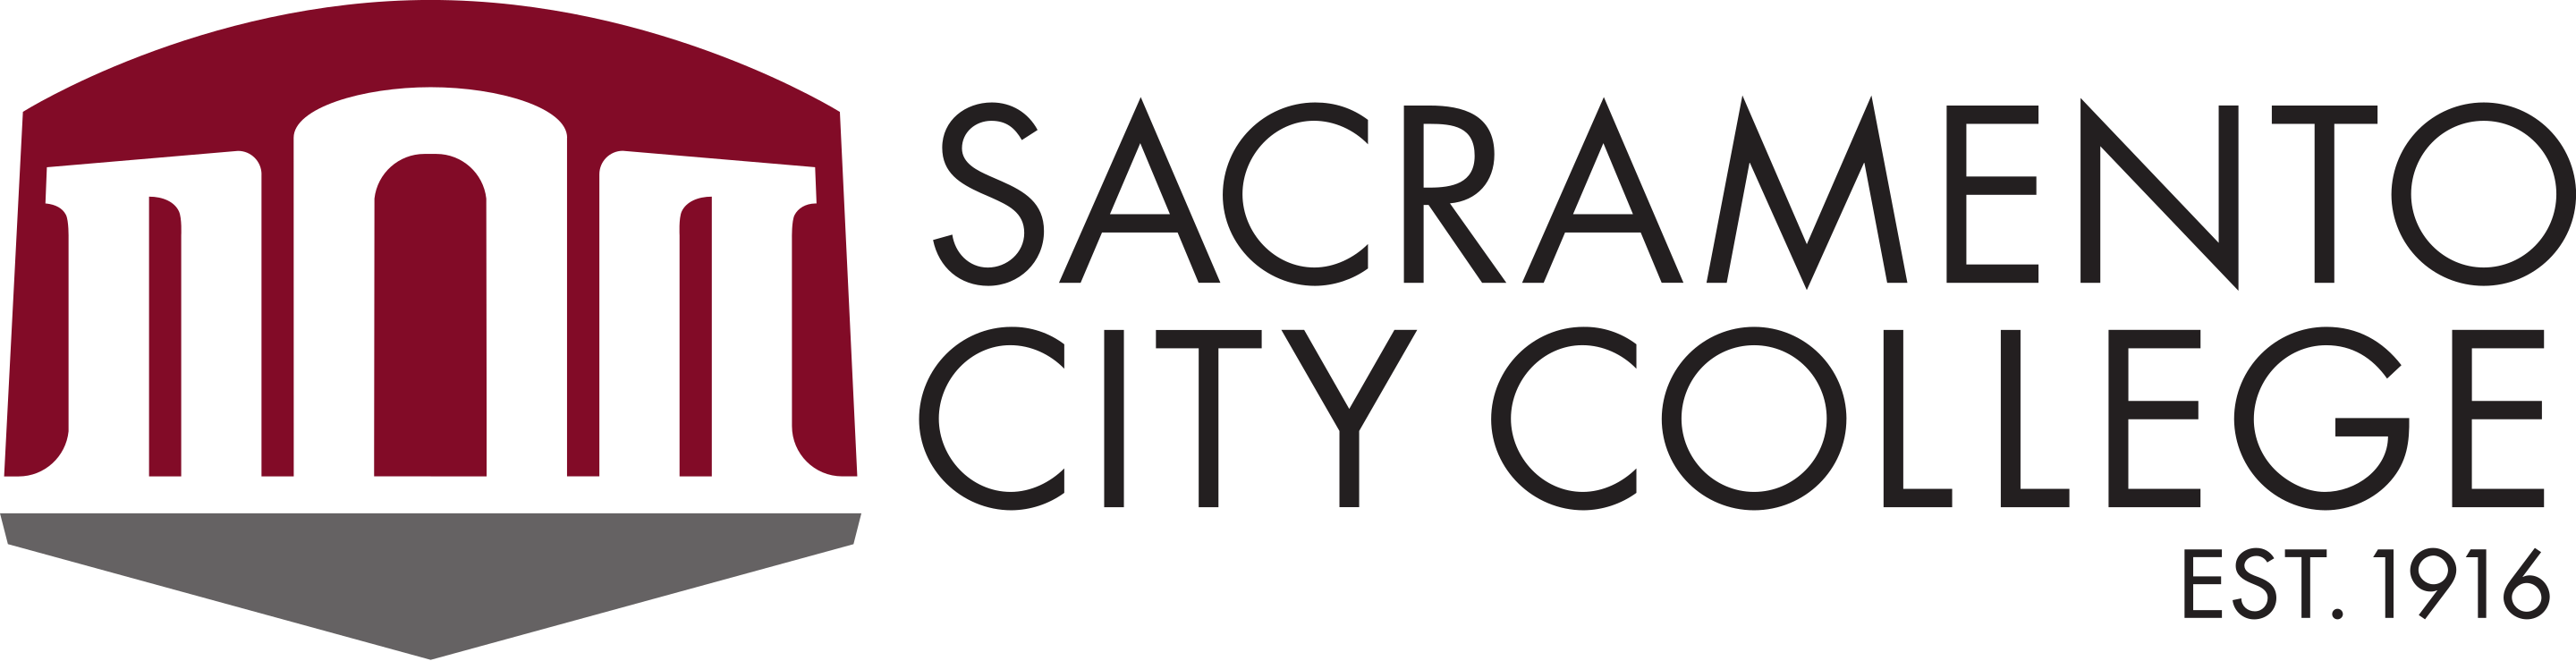 Sacramento City College logo